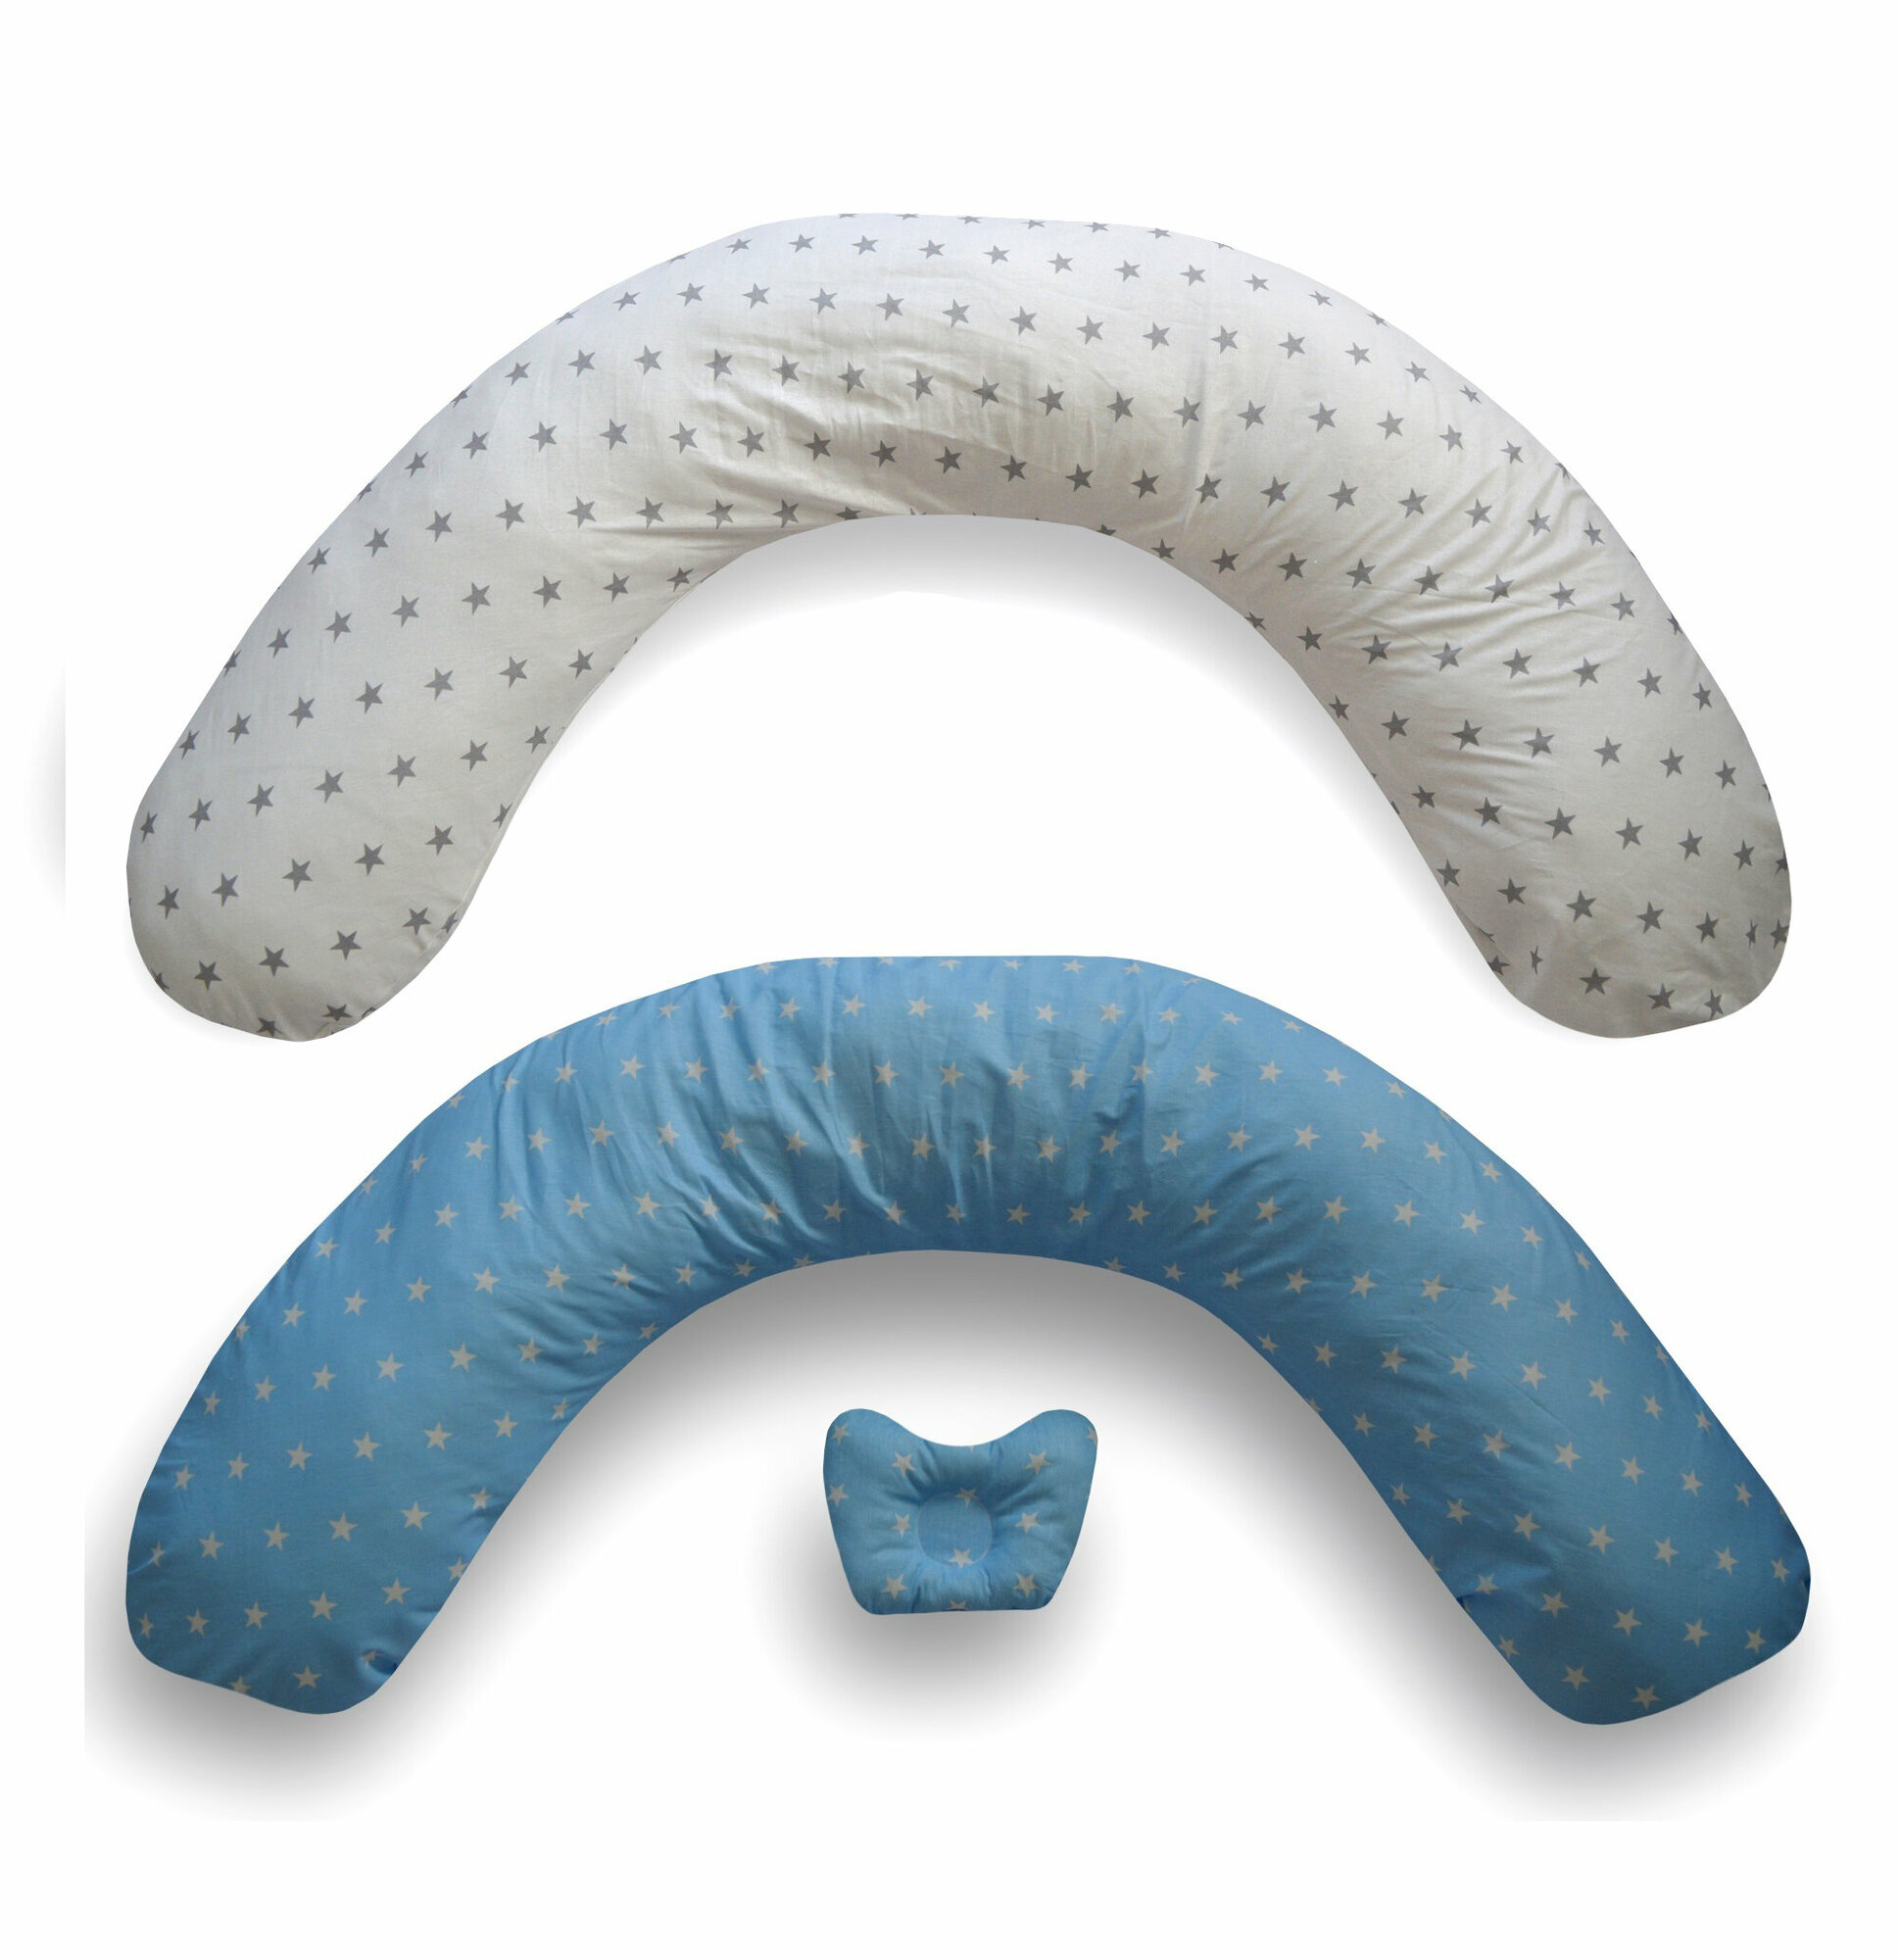 Подушка Мастерская снов для беременных V-210 MAXI материал наволочки хлопок + подушечка для малыша Бело-голубые звездочки